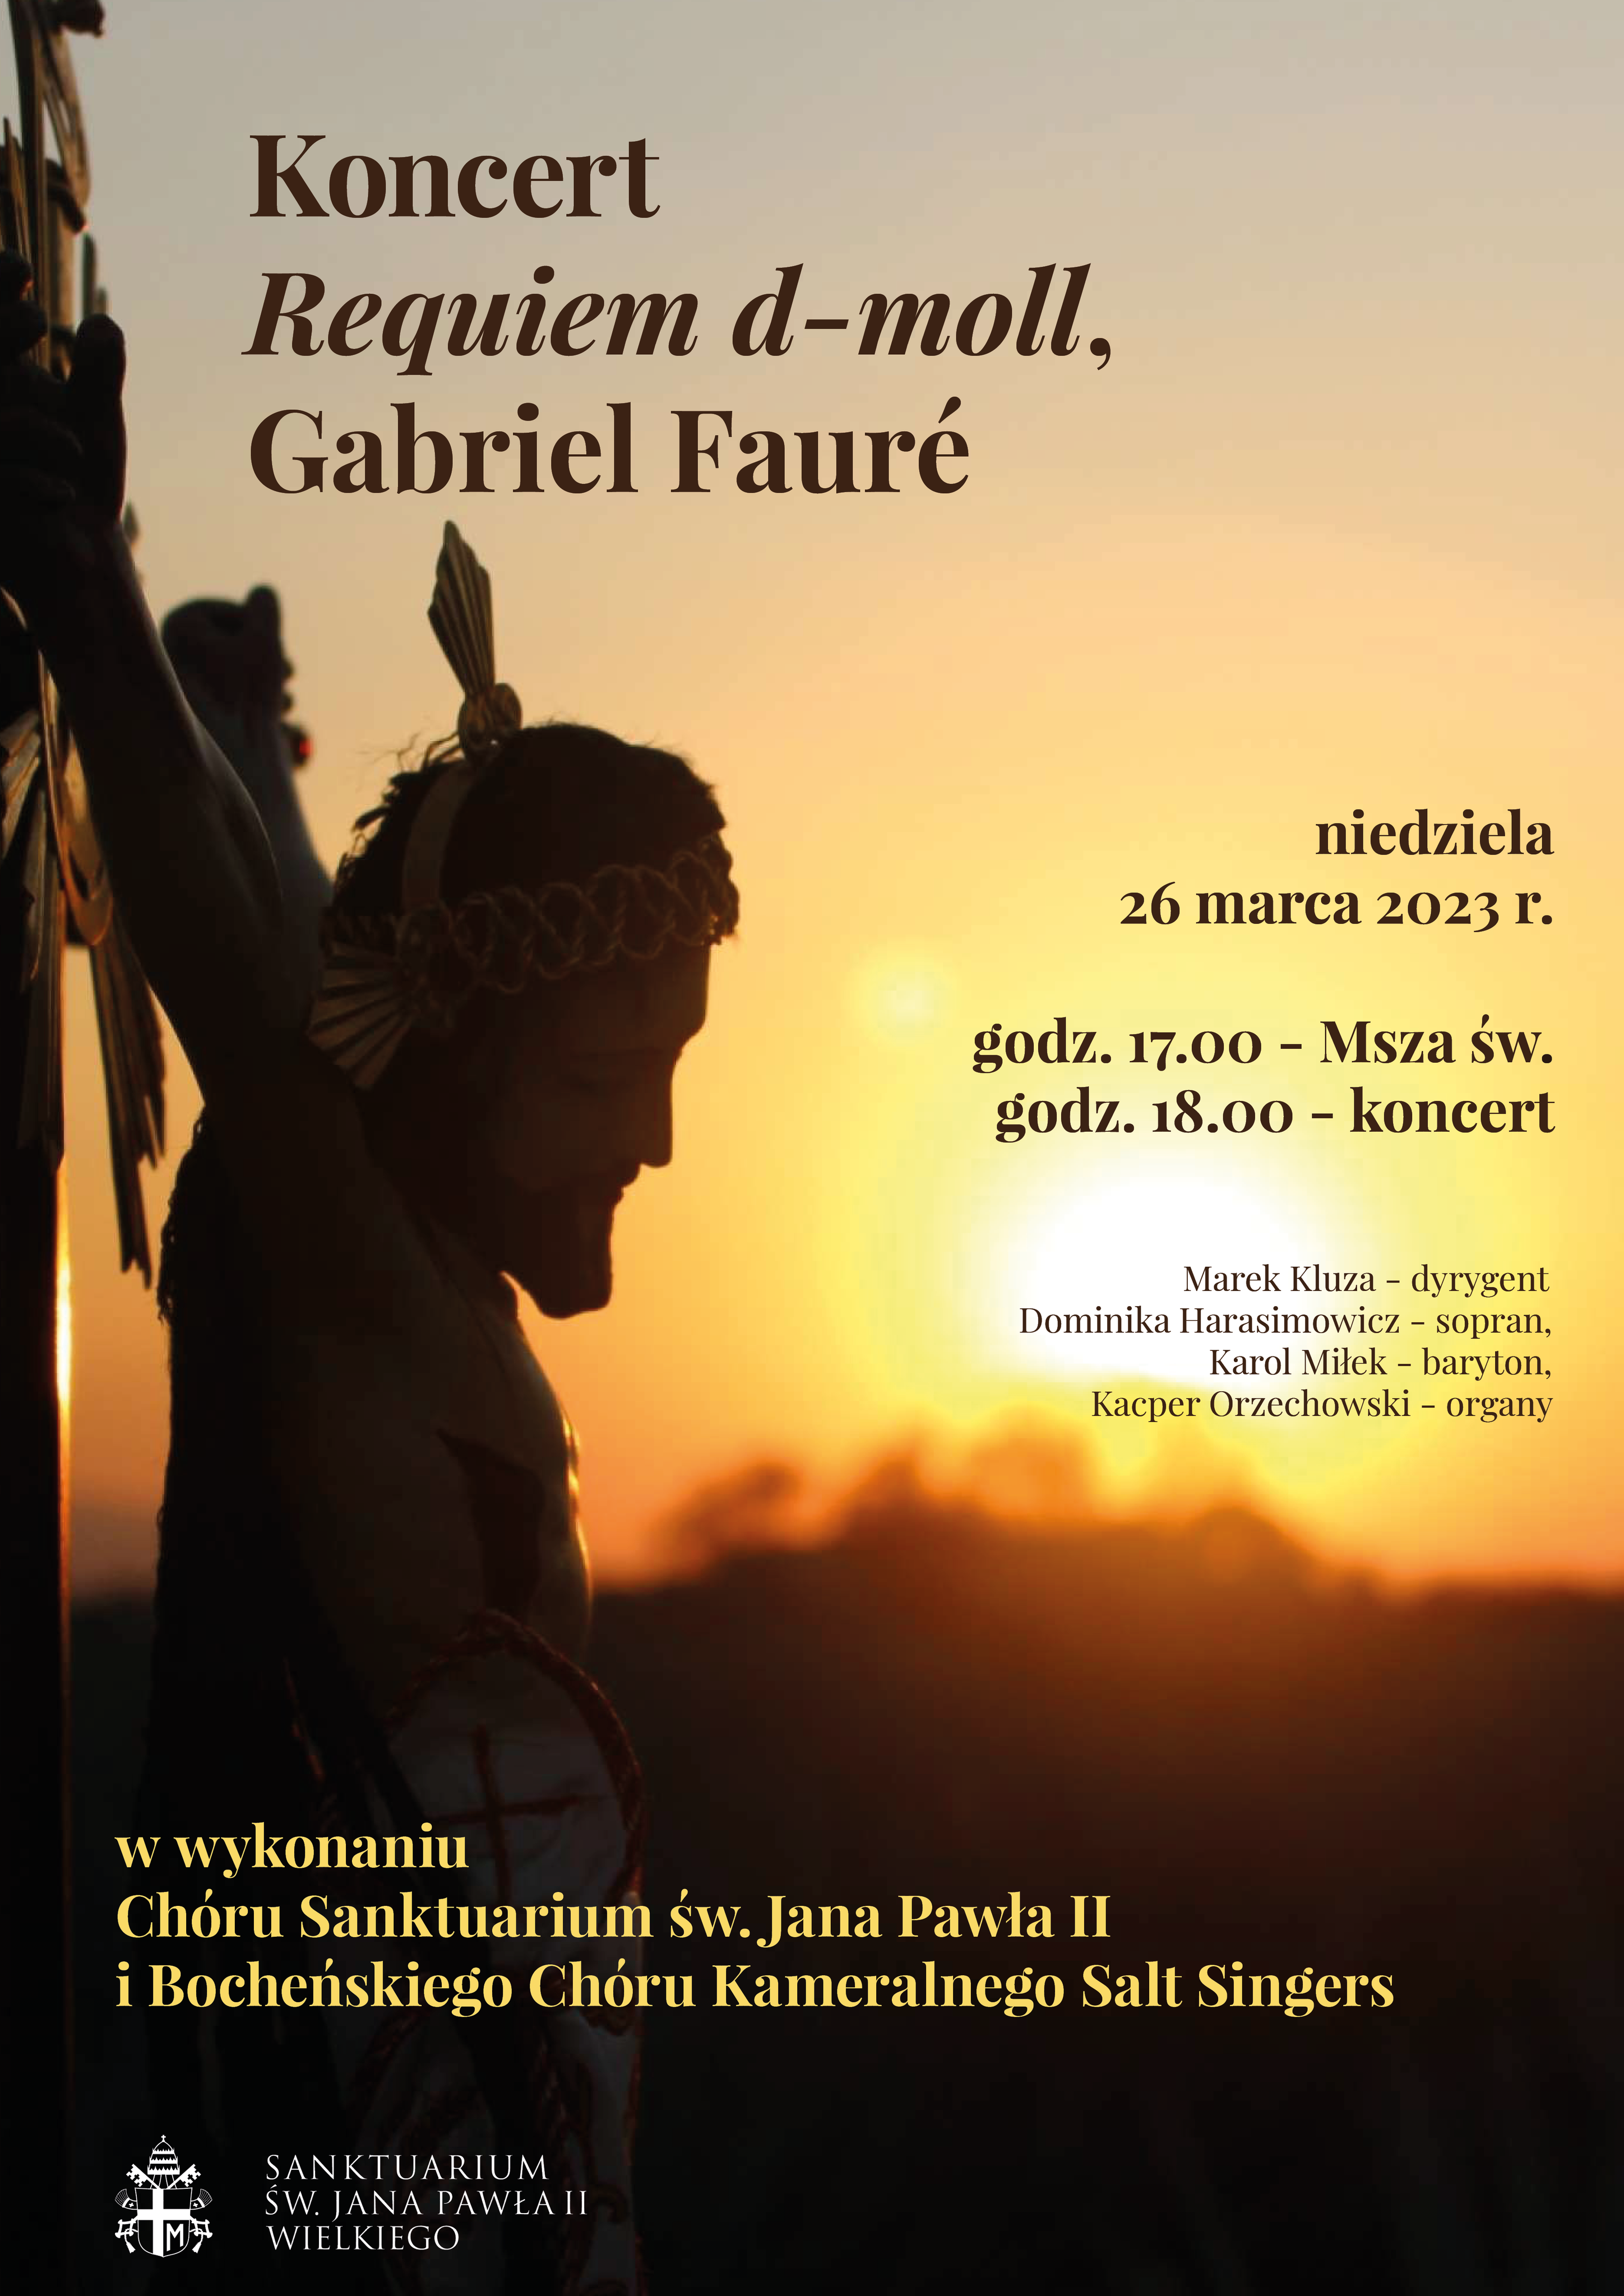 Requiem d-moll op. 48 Gabriela Fauré